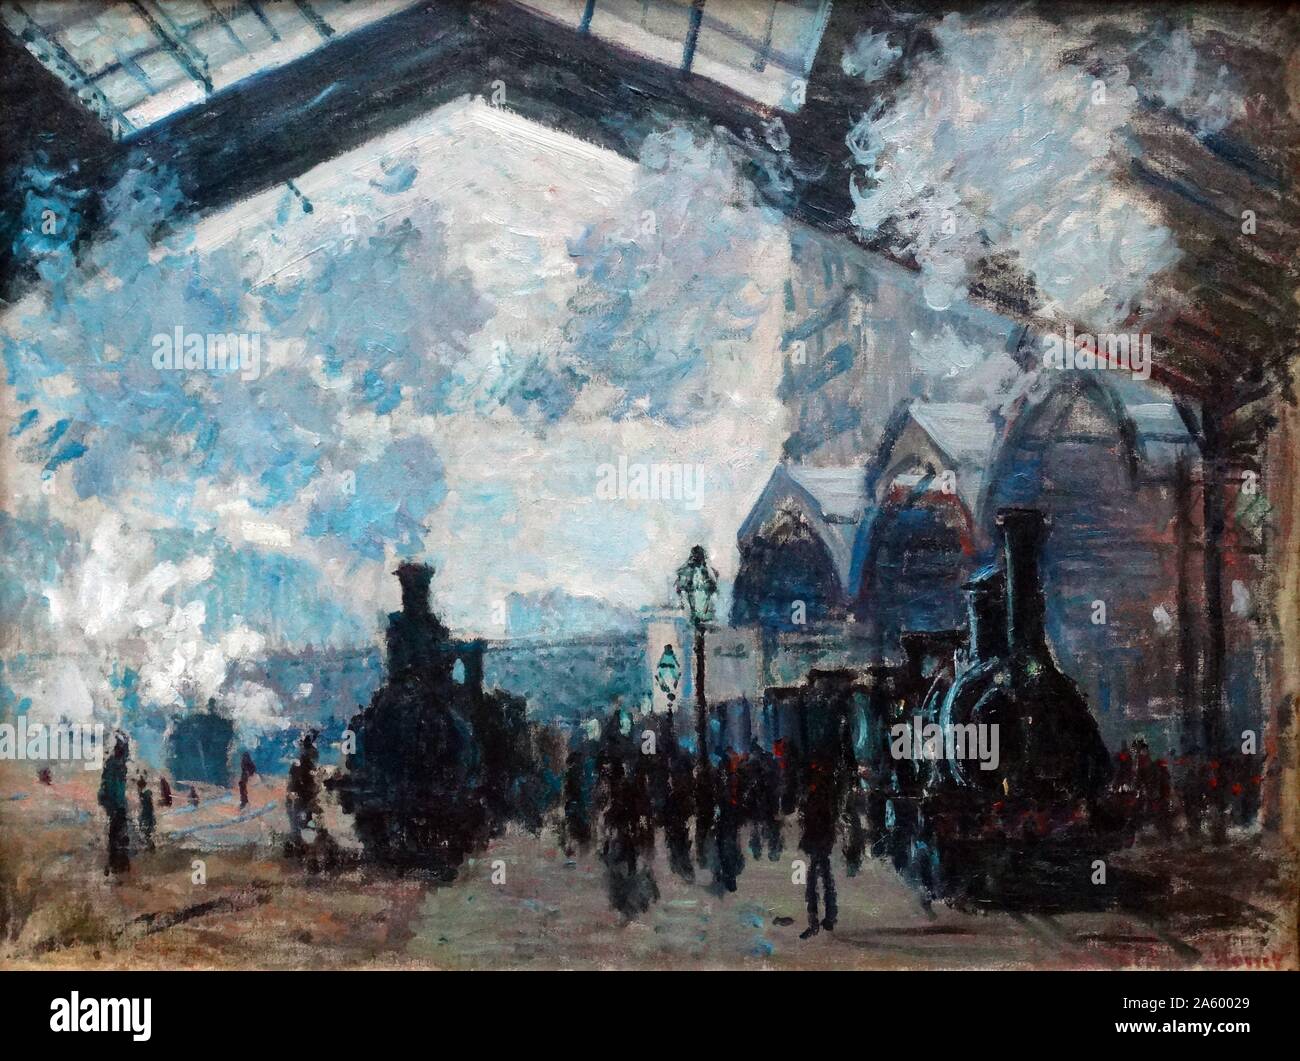 Gemälde mit dem Titel "The Gare St-Lazare" von Claude Monet (1840-1926) Gründer der französischen impressionistischen Malerei. Vom Jahre 1877 Stockfoto